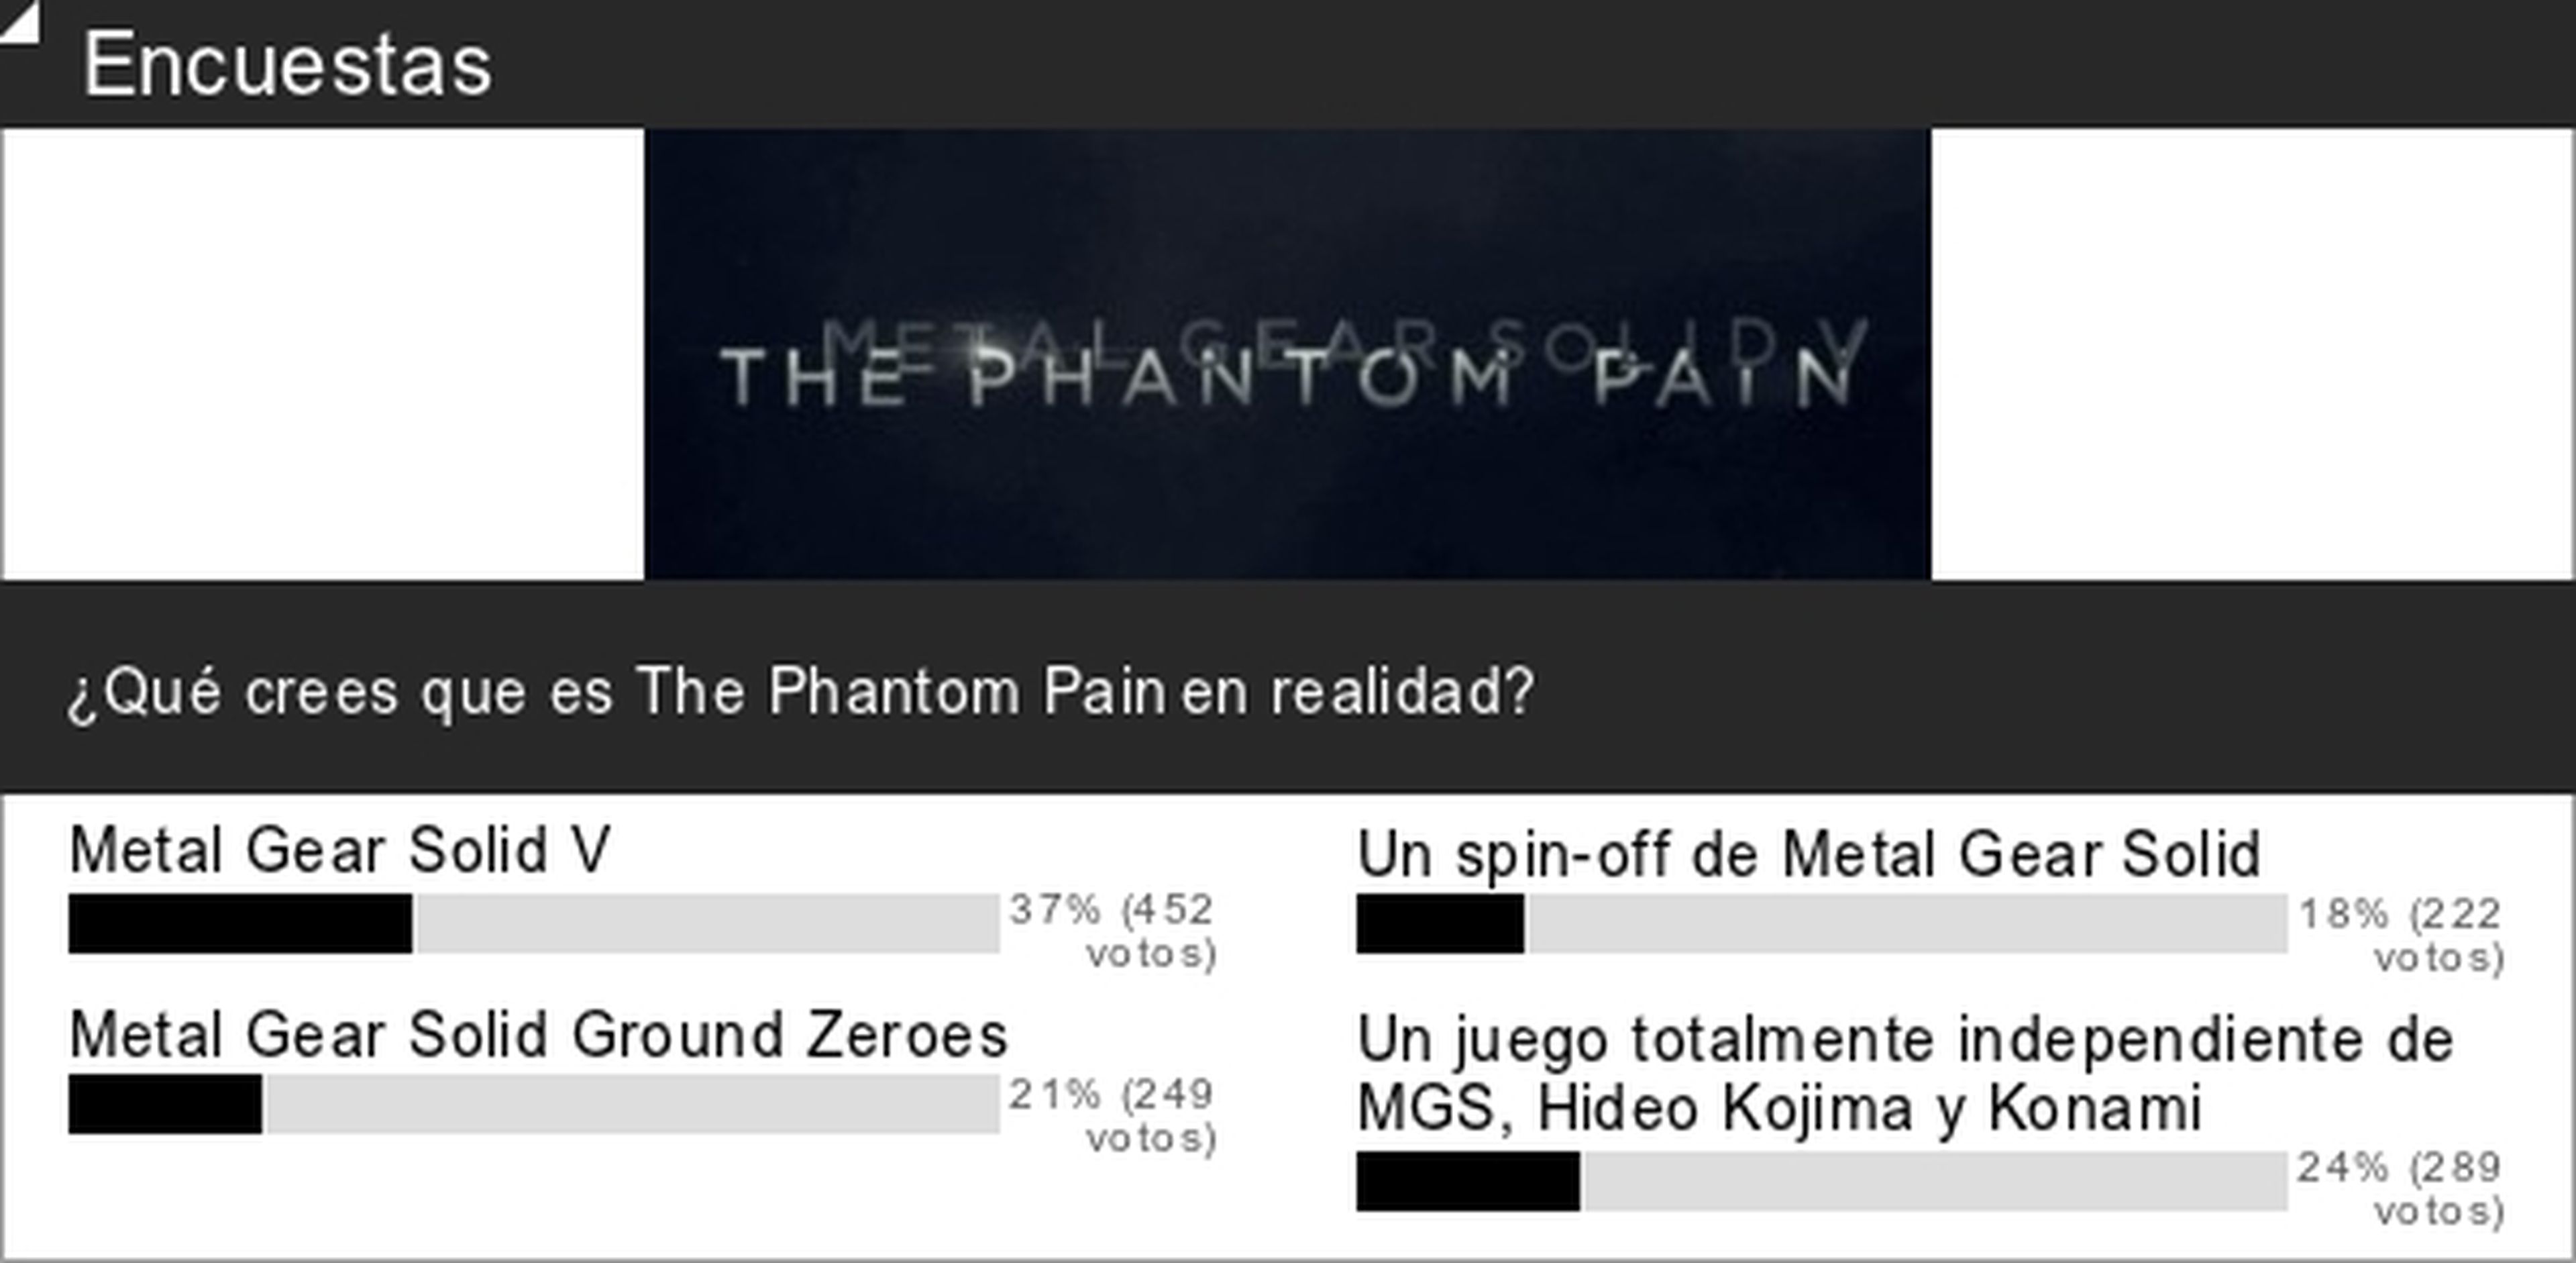 Encuesta: The Phantom Pain es Metal Gear Solid 5